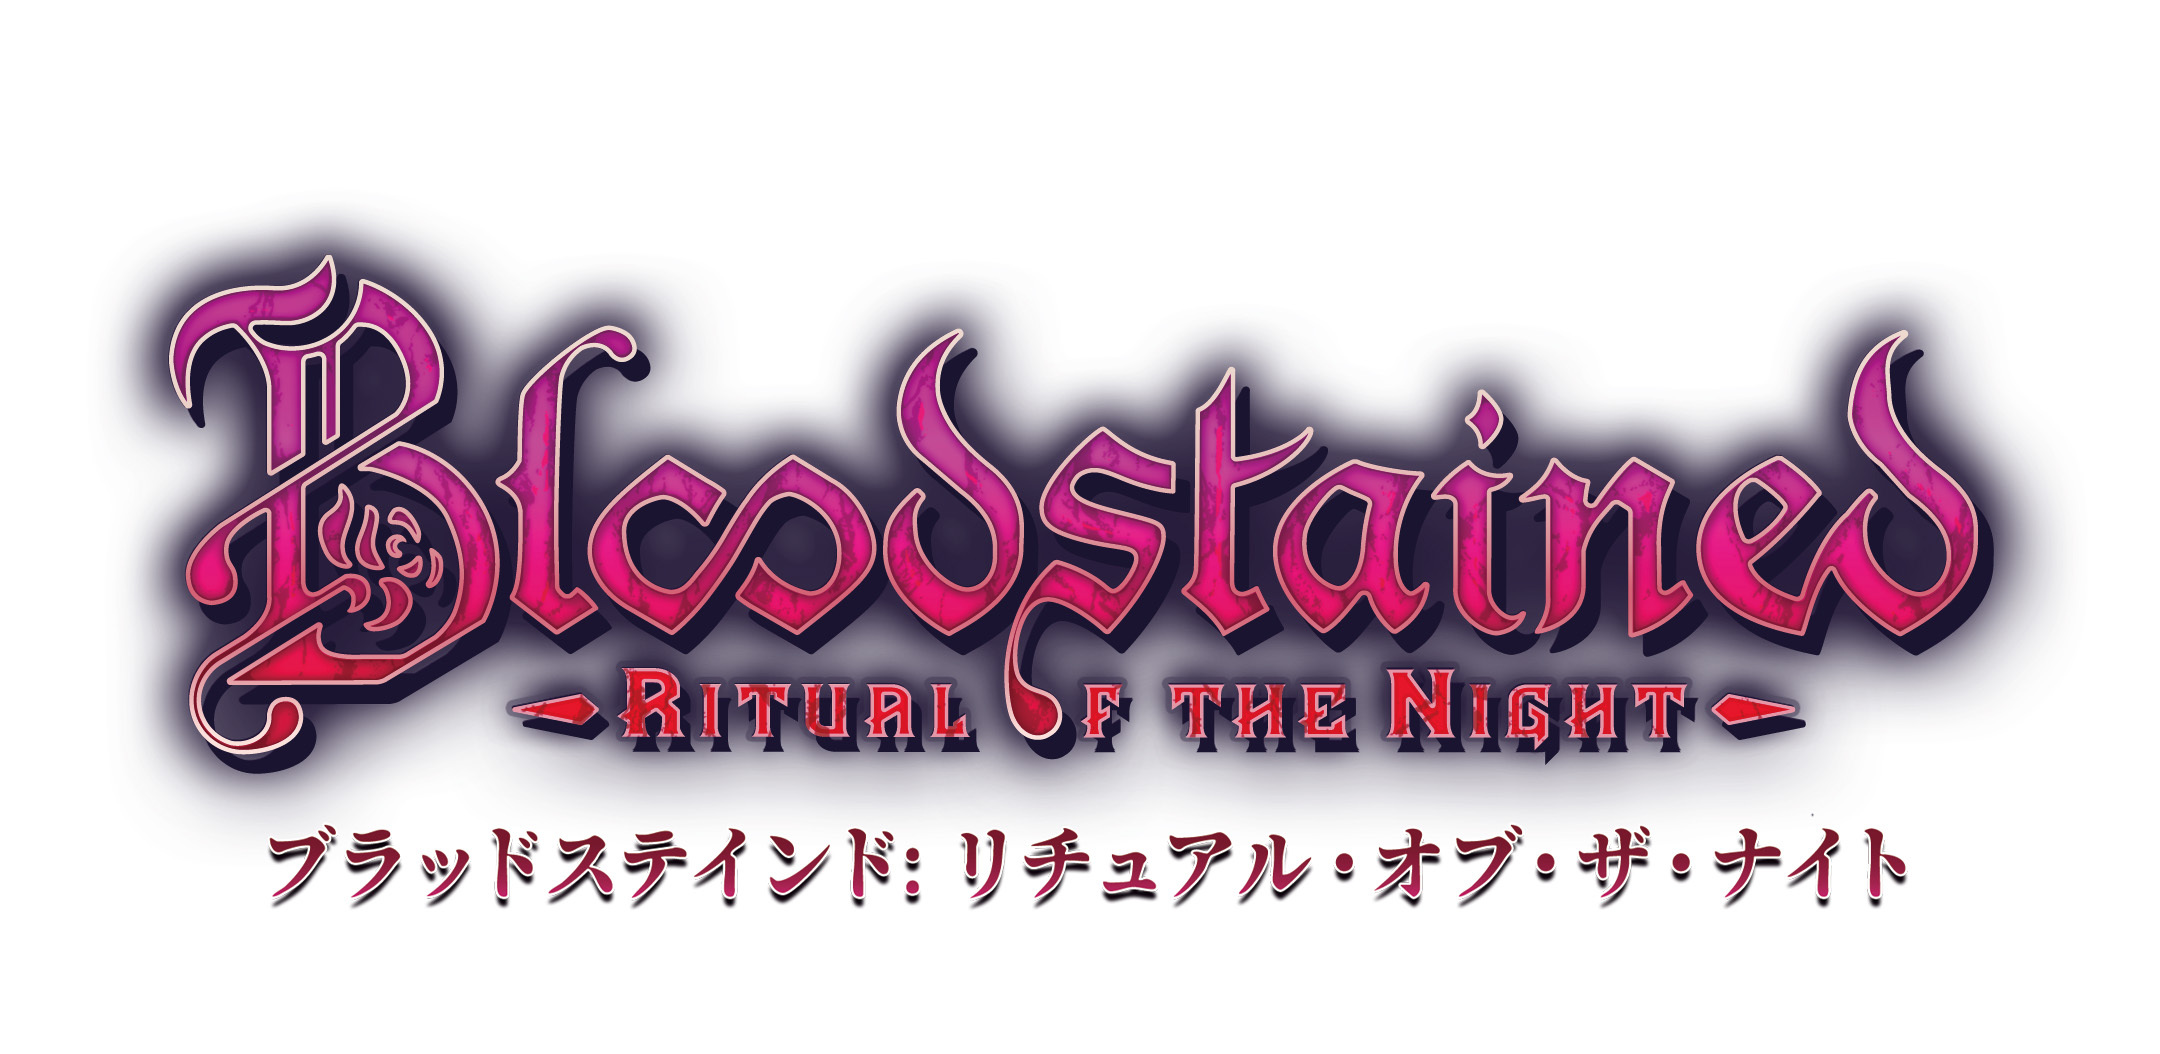 『Bloodstained: Ritual of the Night
(ブラッドステインド：リチュアル・オブ・ザ・ナイト)』
日本語パッケージ版がベストプライス版で帰ってきた！
Nintendo Switch(TM)で2024年5月16日発売決定！
本日2月26日より予約受付開始